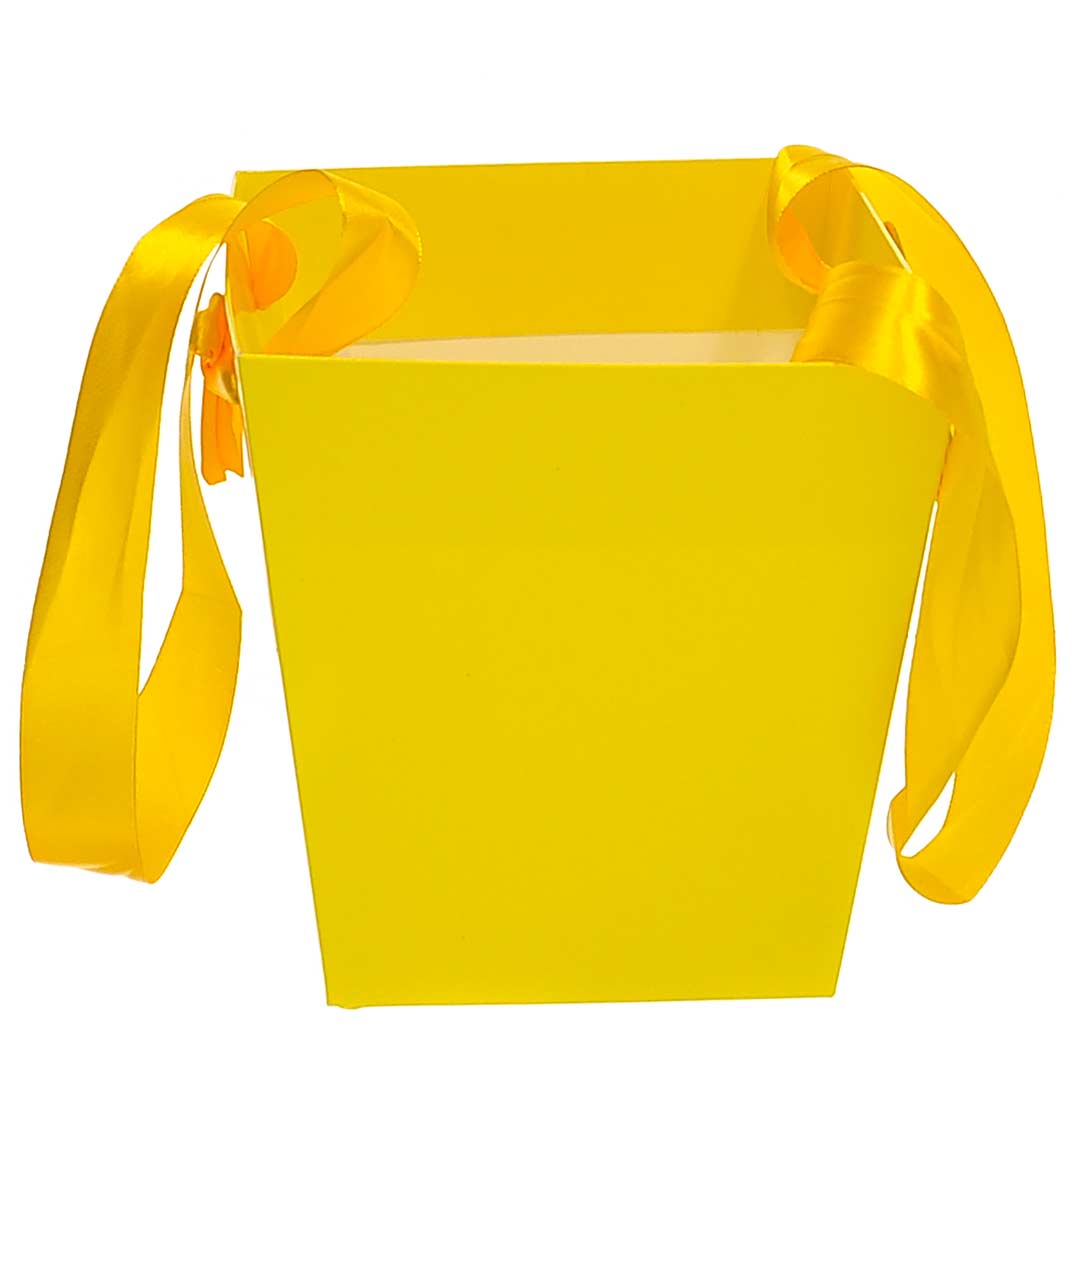 Изображение Сумка для цветов бумажная Трапеция желтая